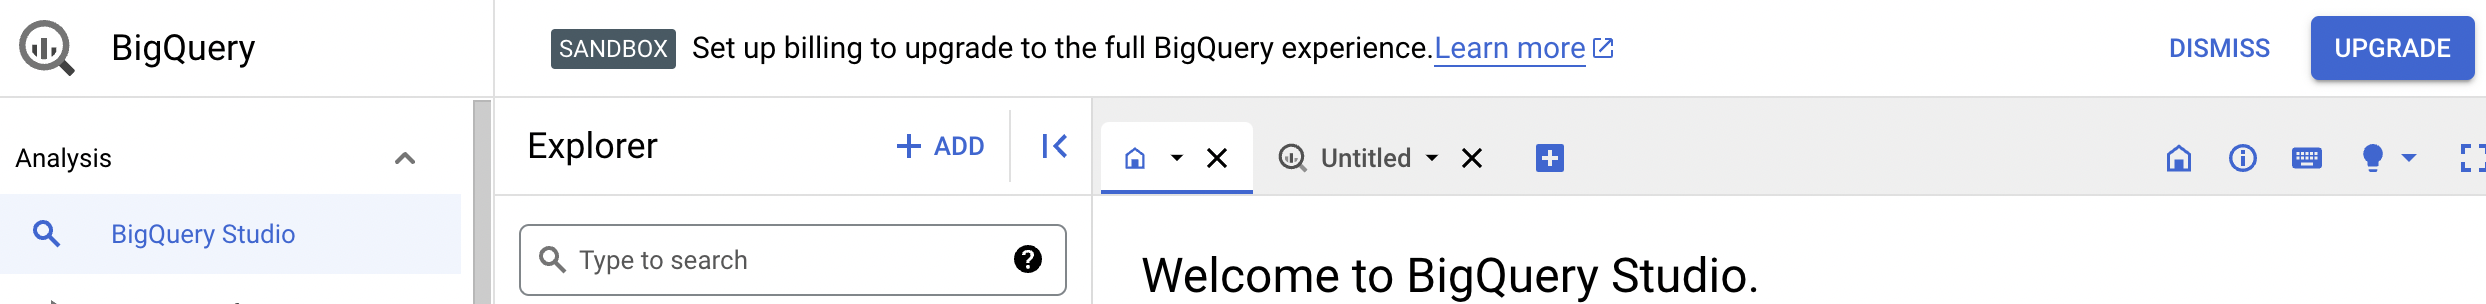 O aviso de confirmação oferece a opção de fazer upgrade para a experiência completa do BigQuery.